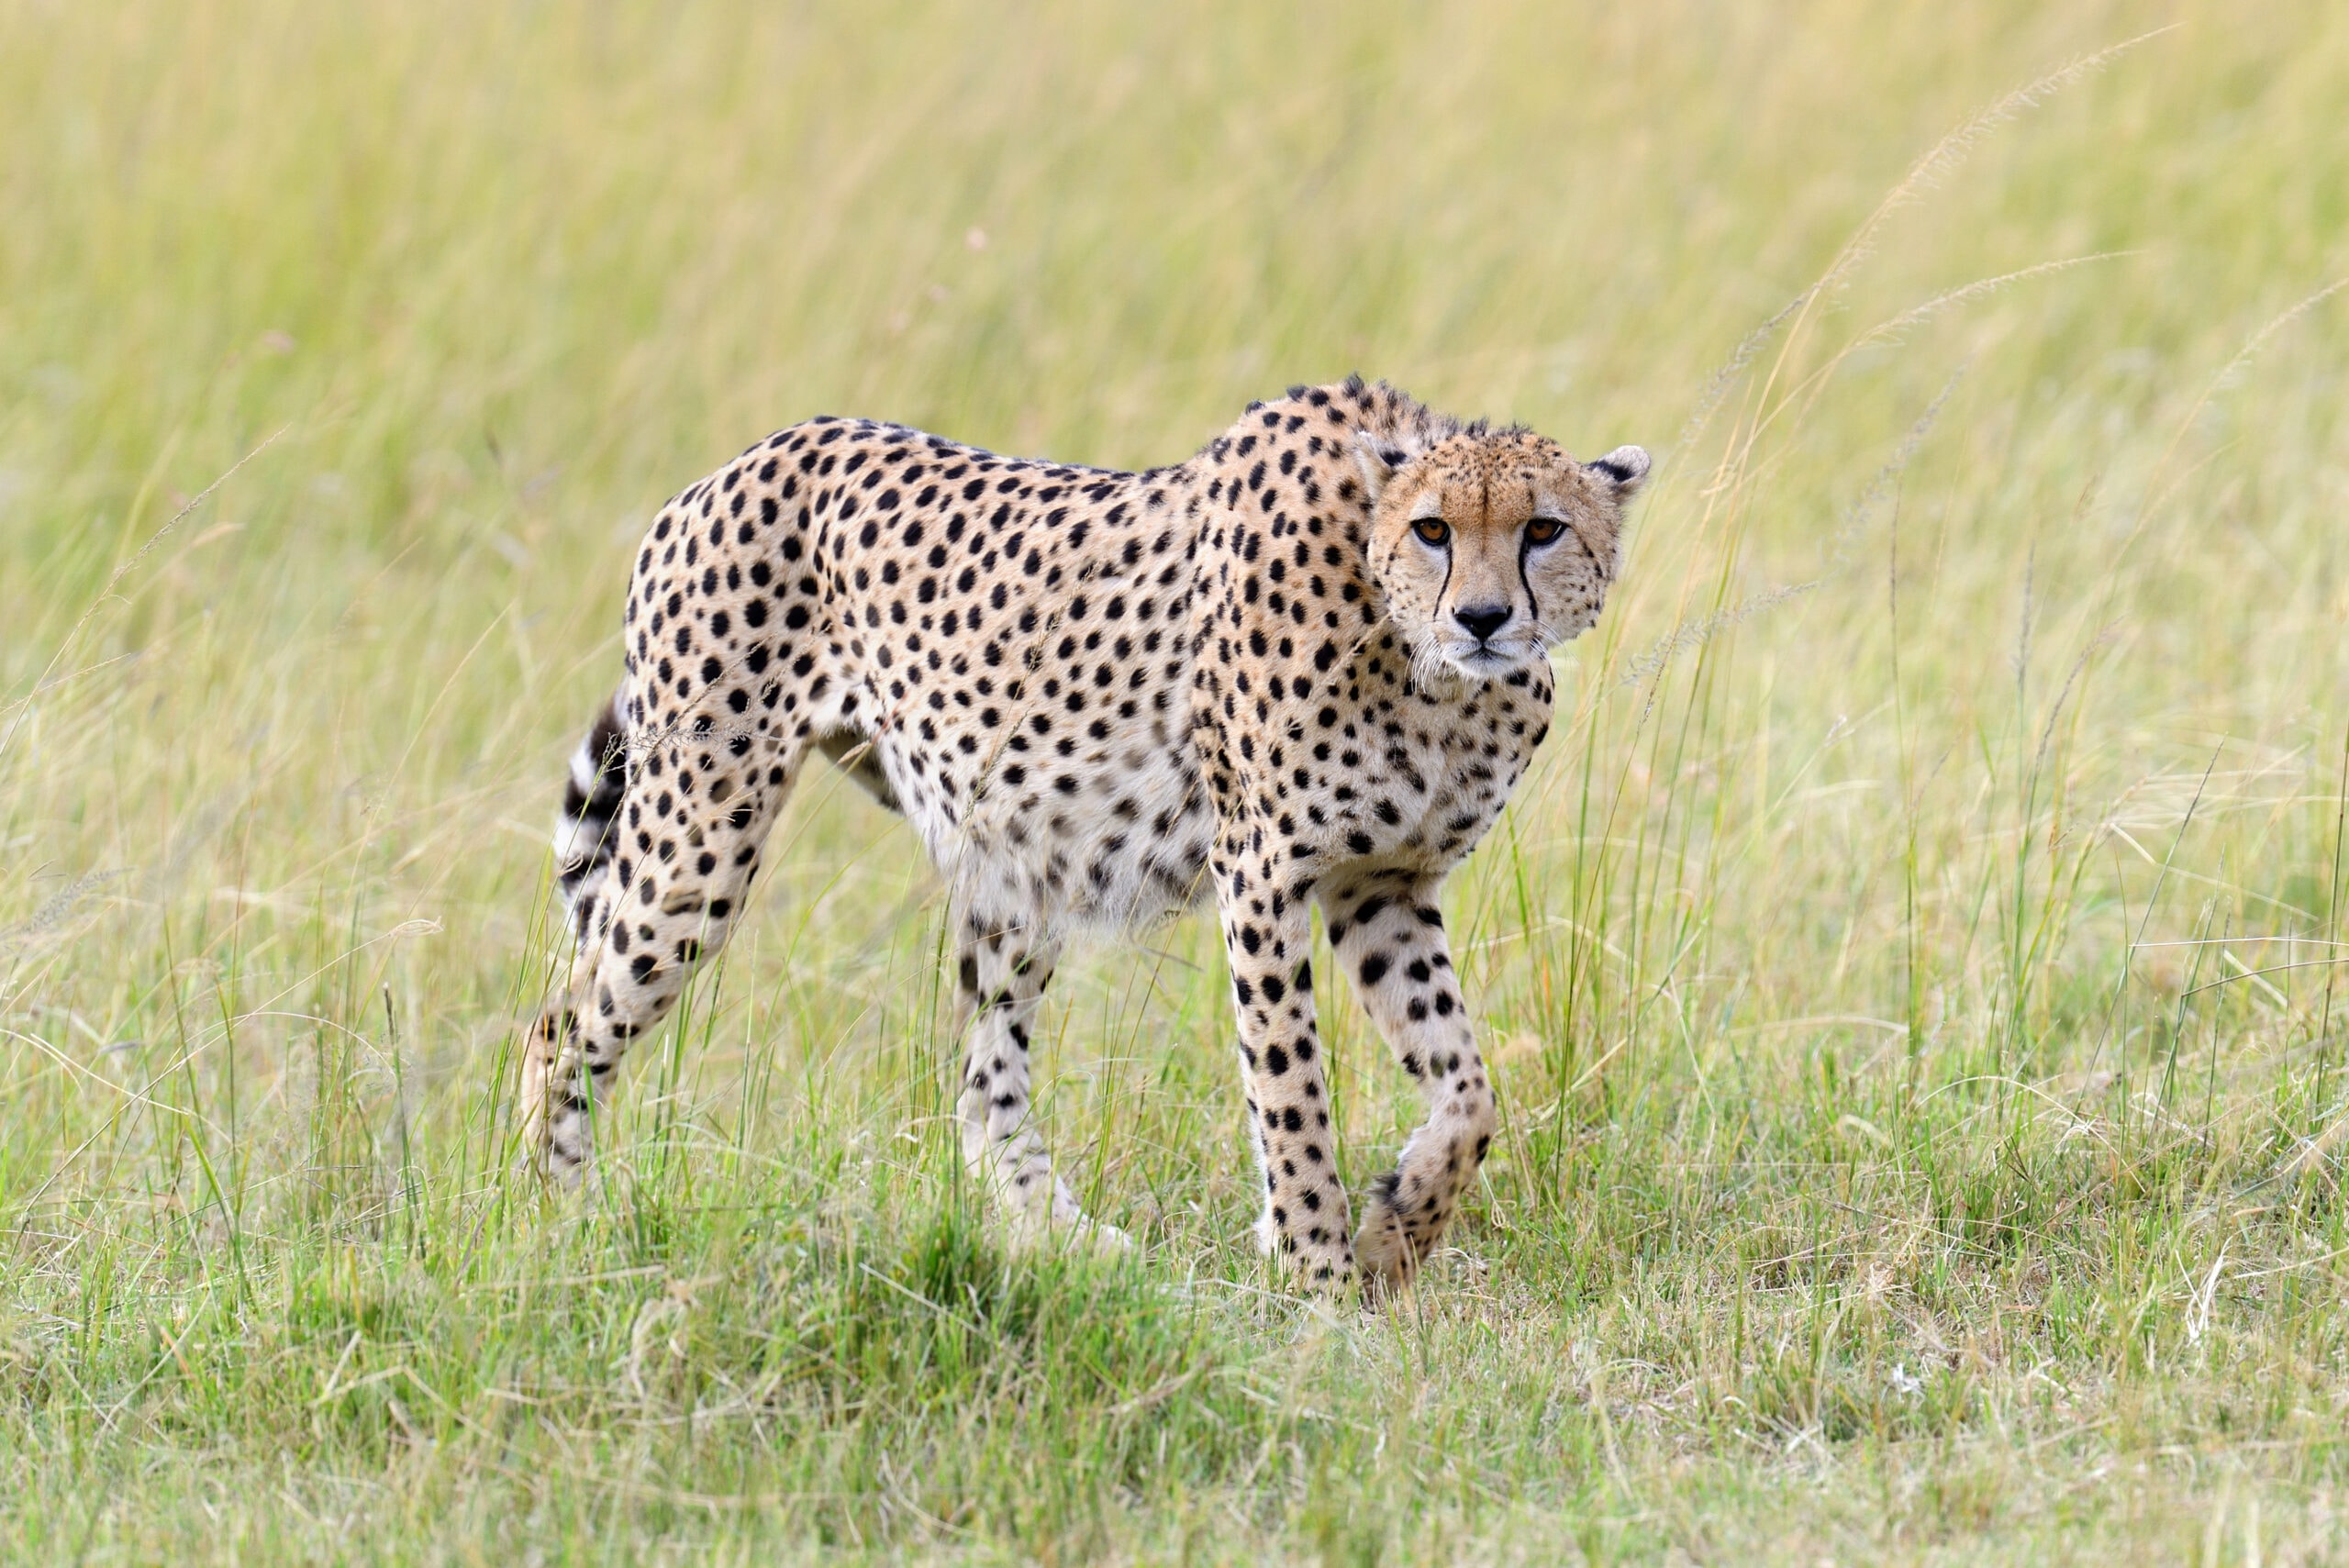 cheetah africa kenya 2021 08 26 15 55 36 utc scaled